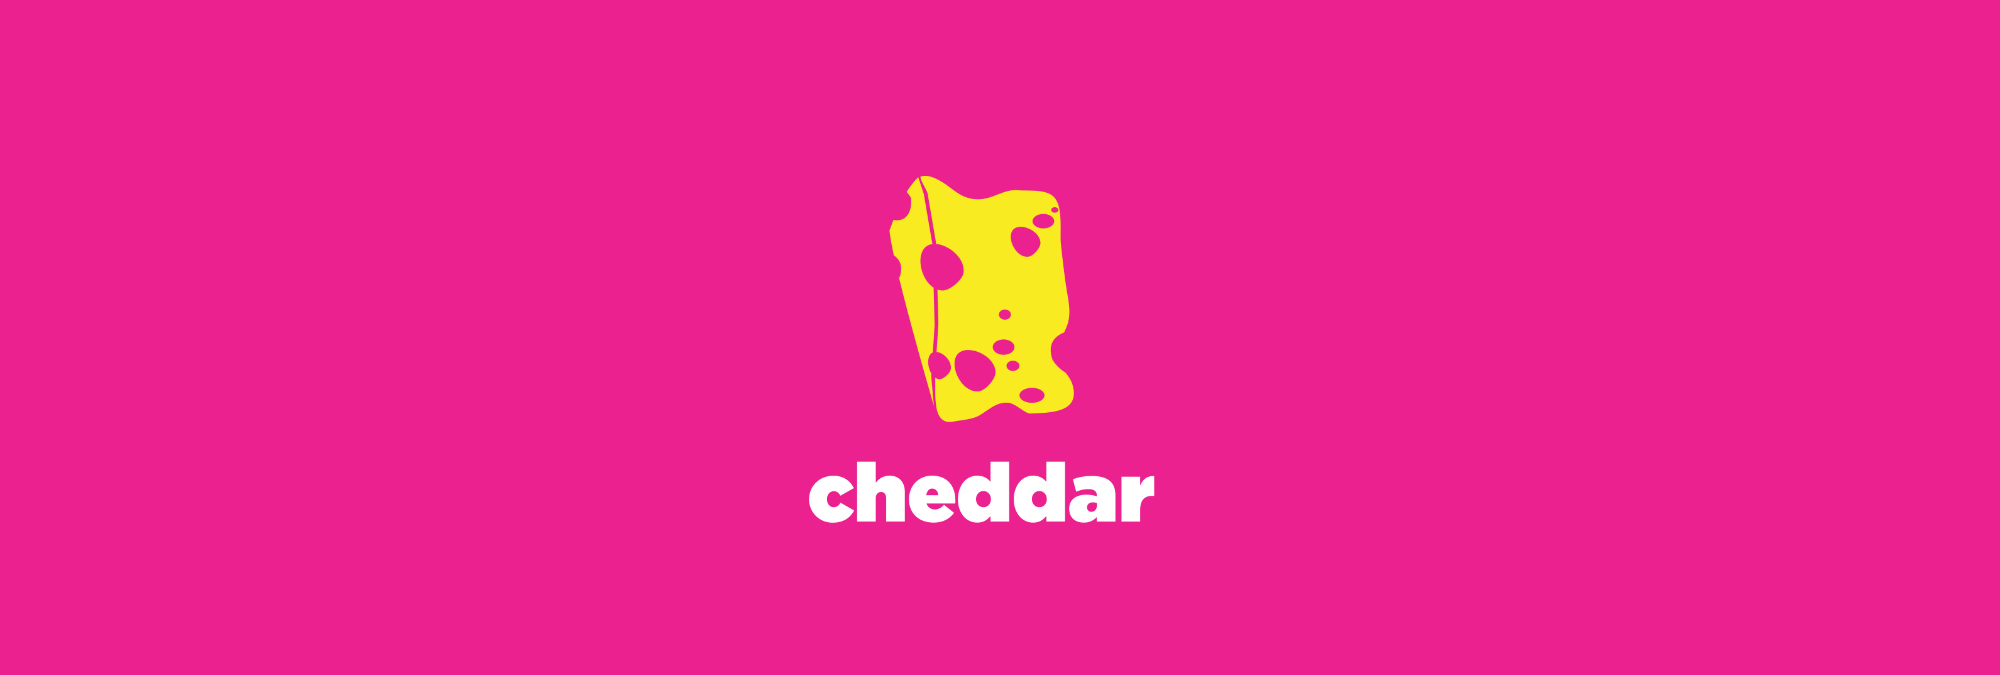 cheddar header image